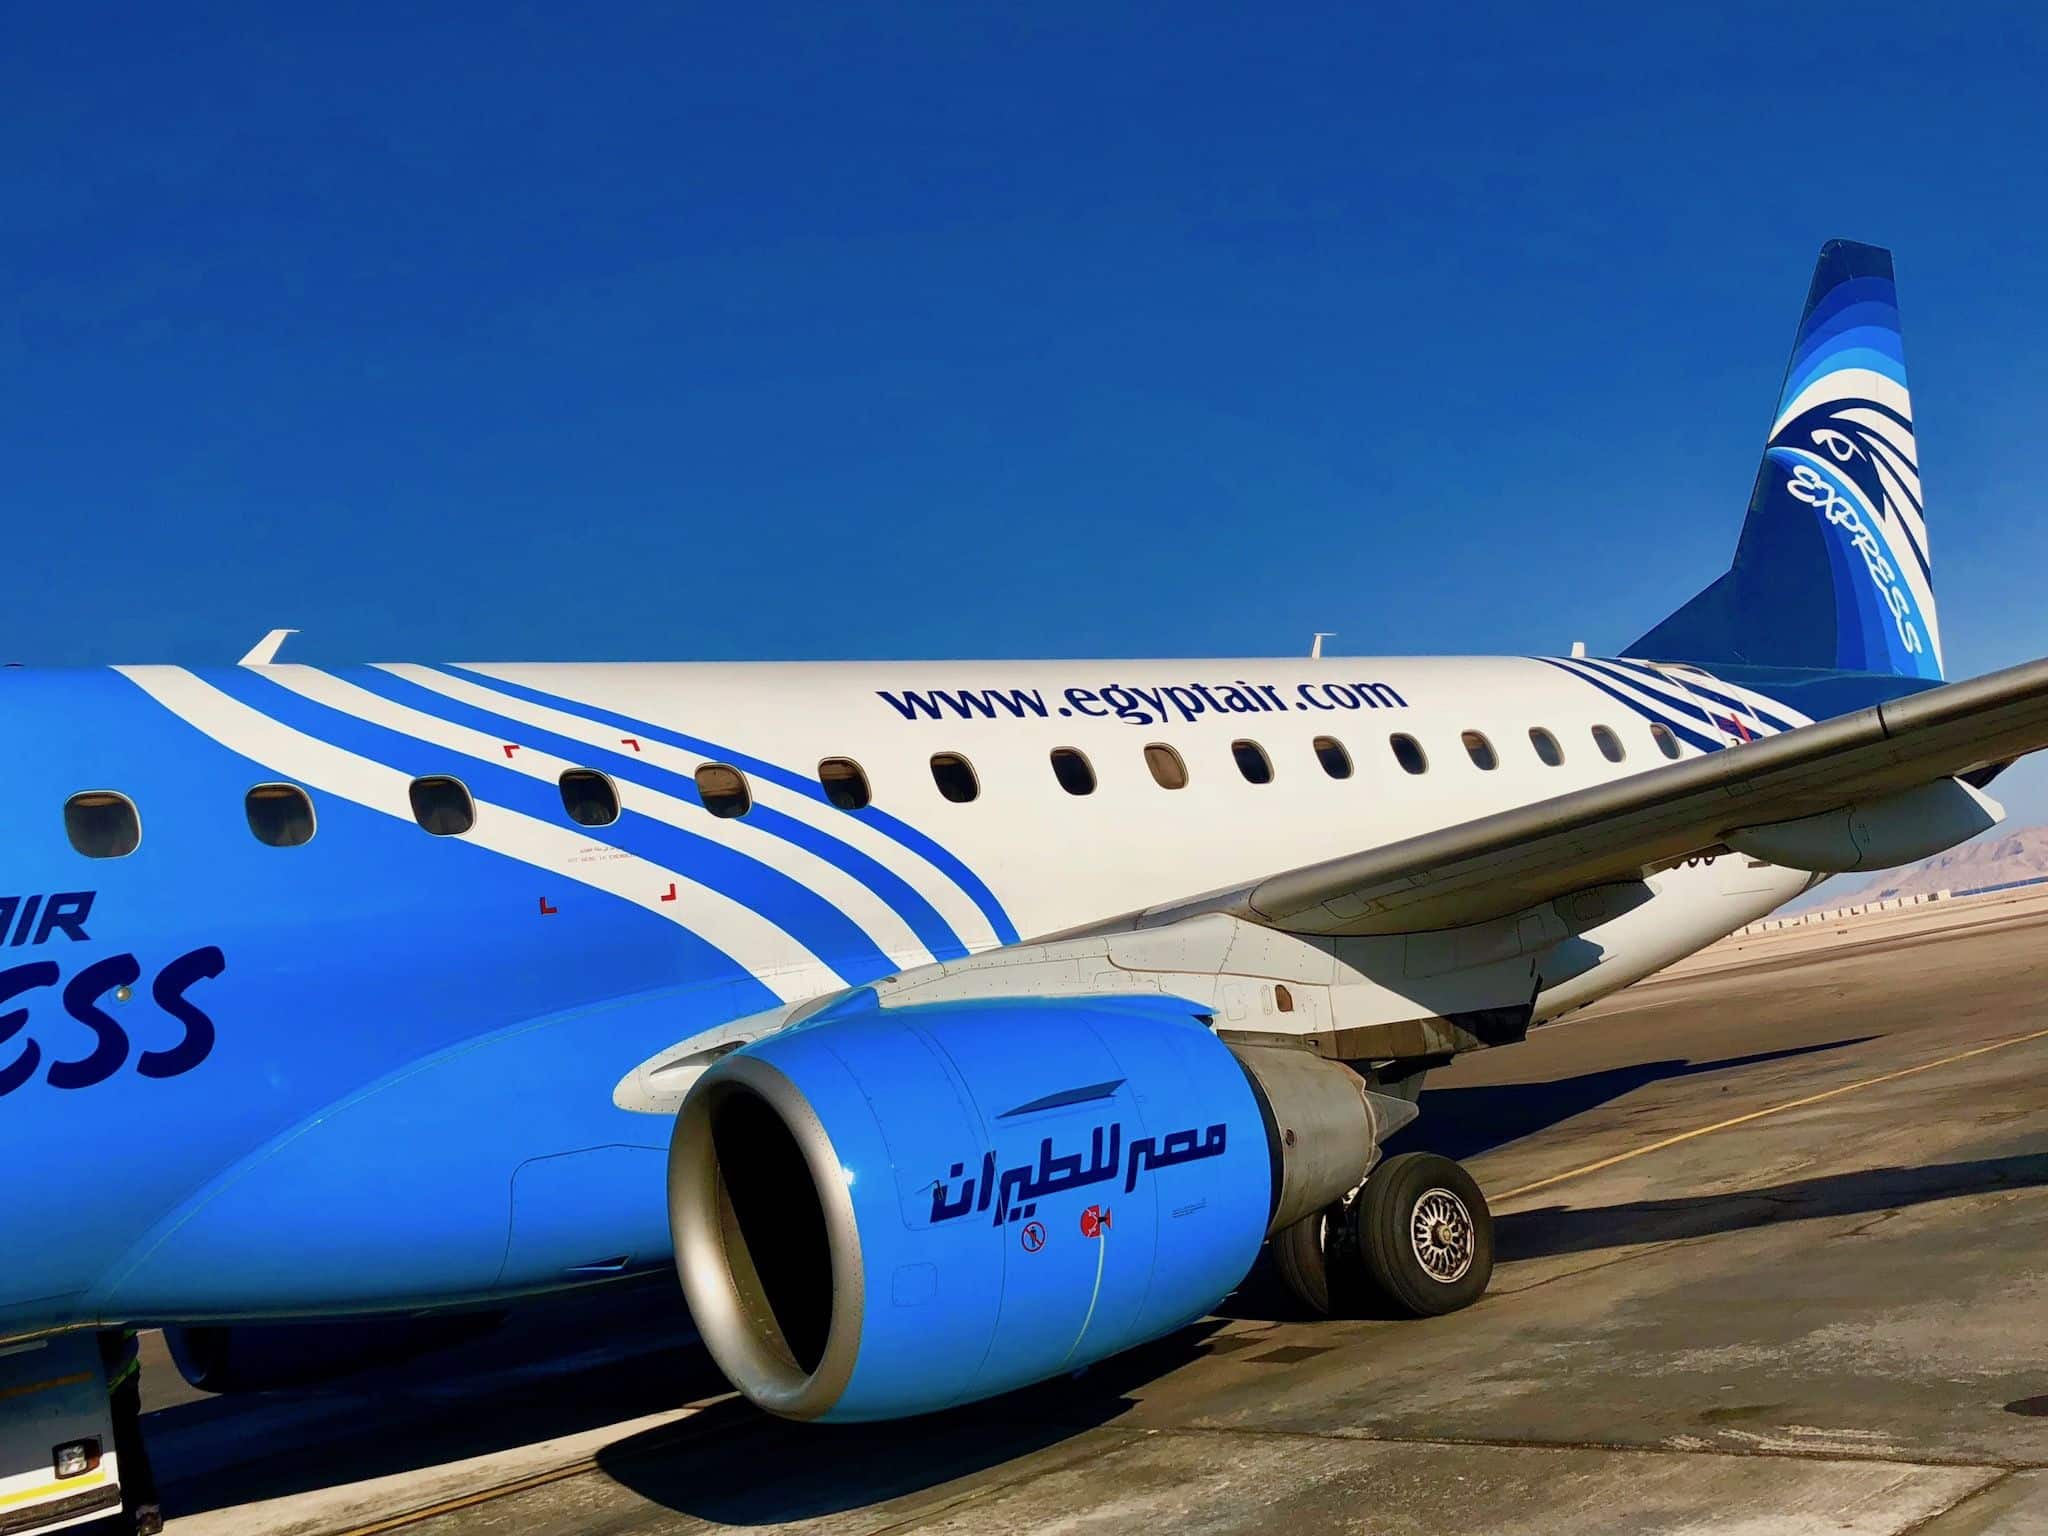 Inlandsflug von Hurghada nach Sharm El Sheik mit Egyptair: Die Verbindung ist sehr komfortabel! Foto: Sascha Tegtmeyer